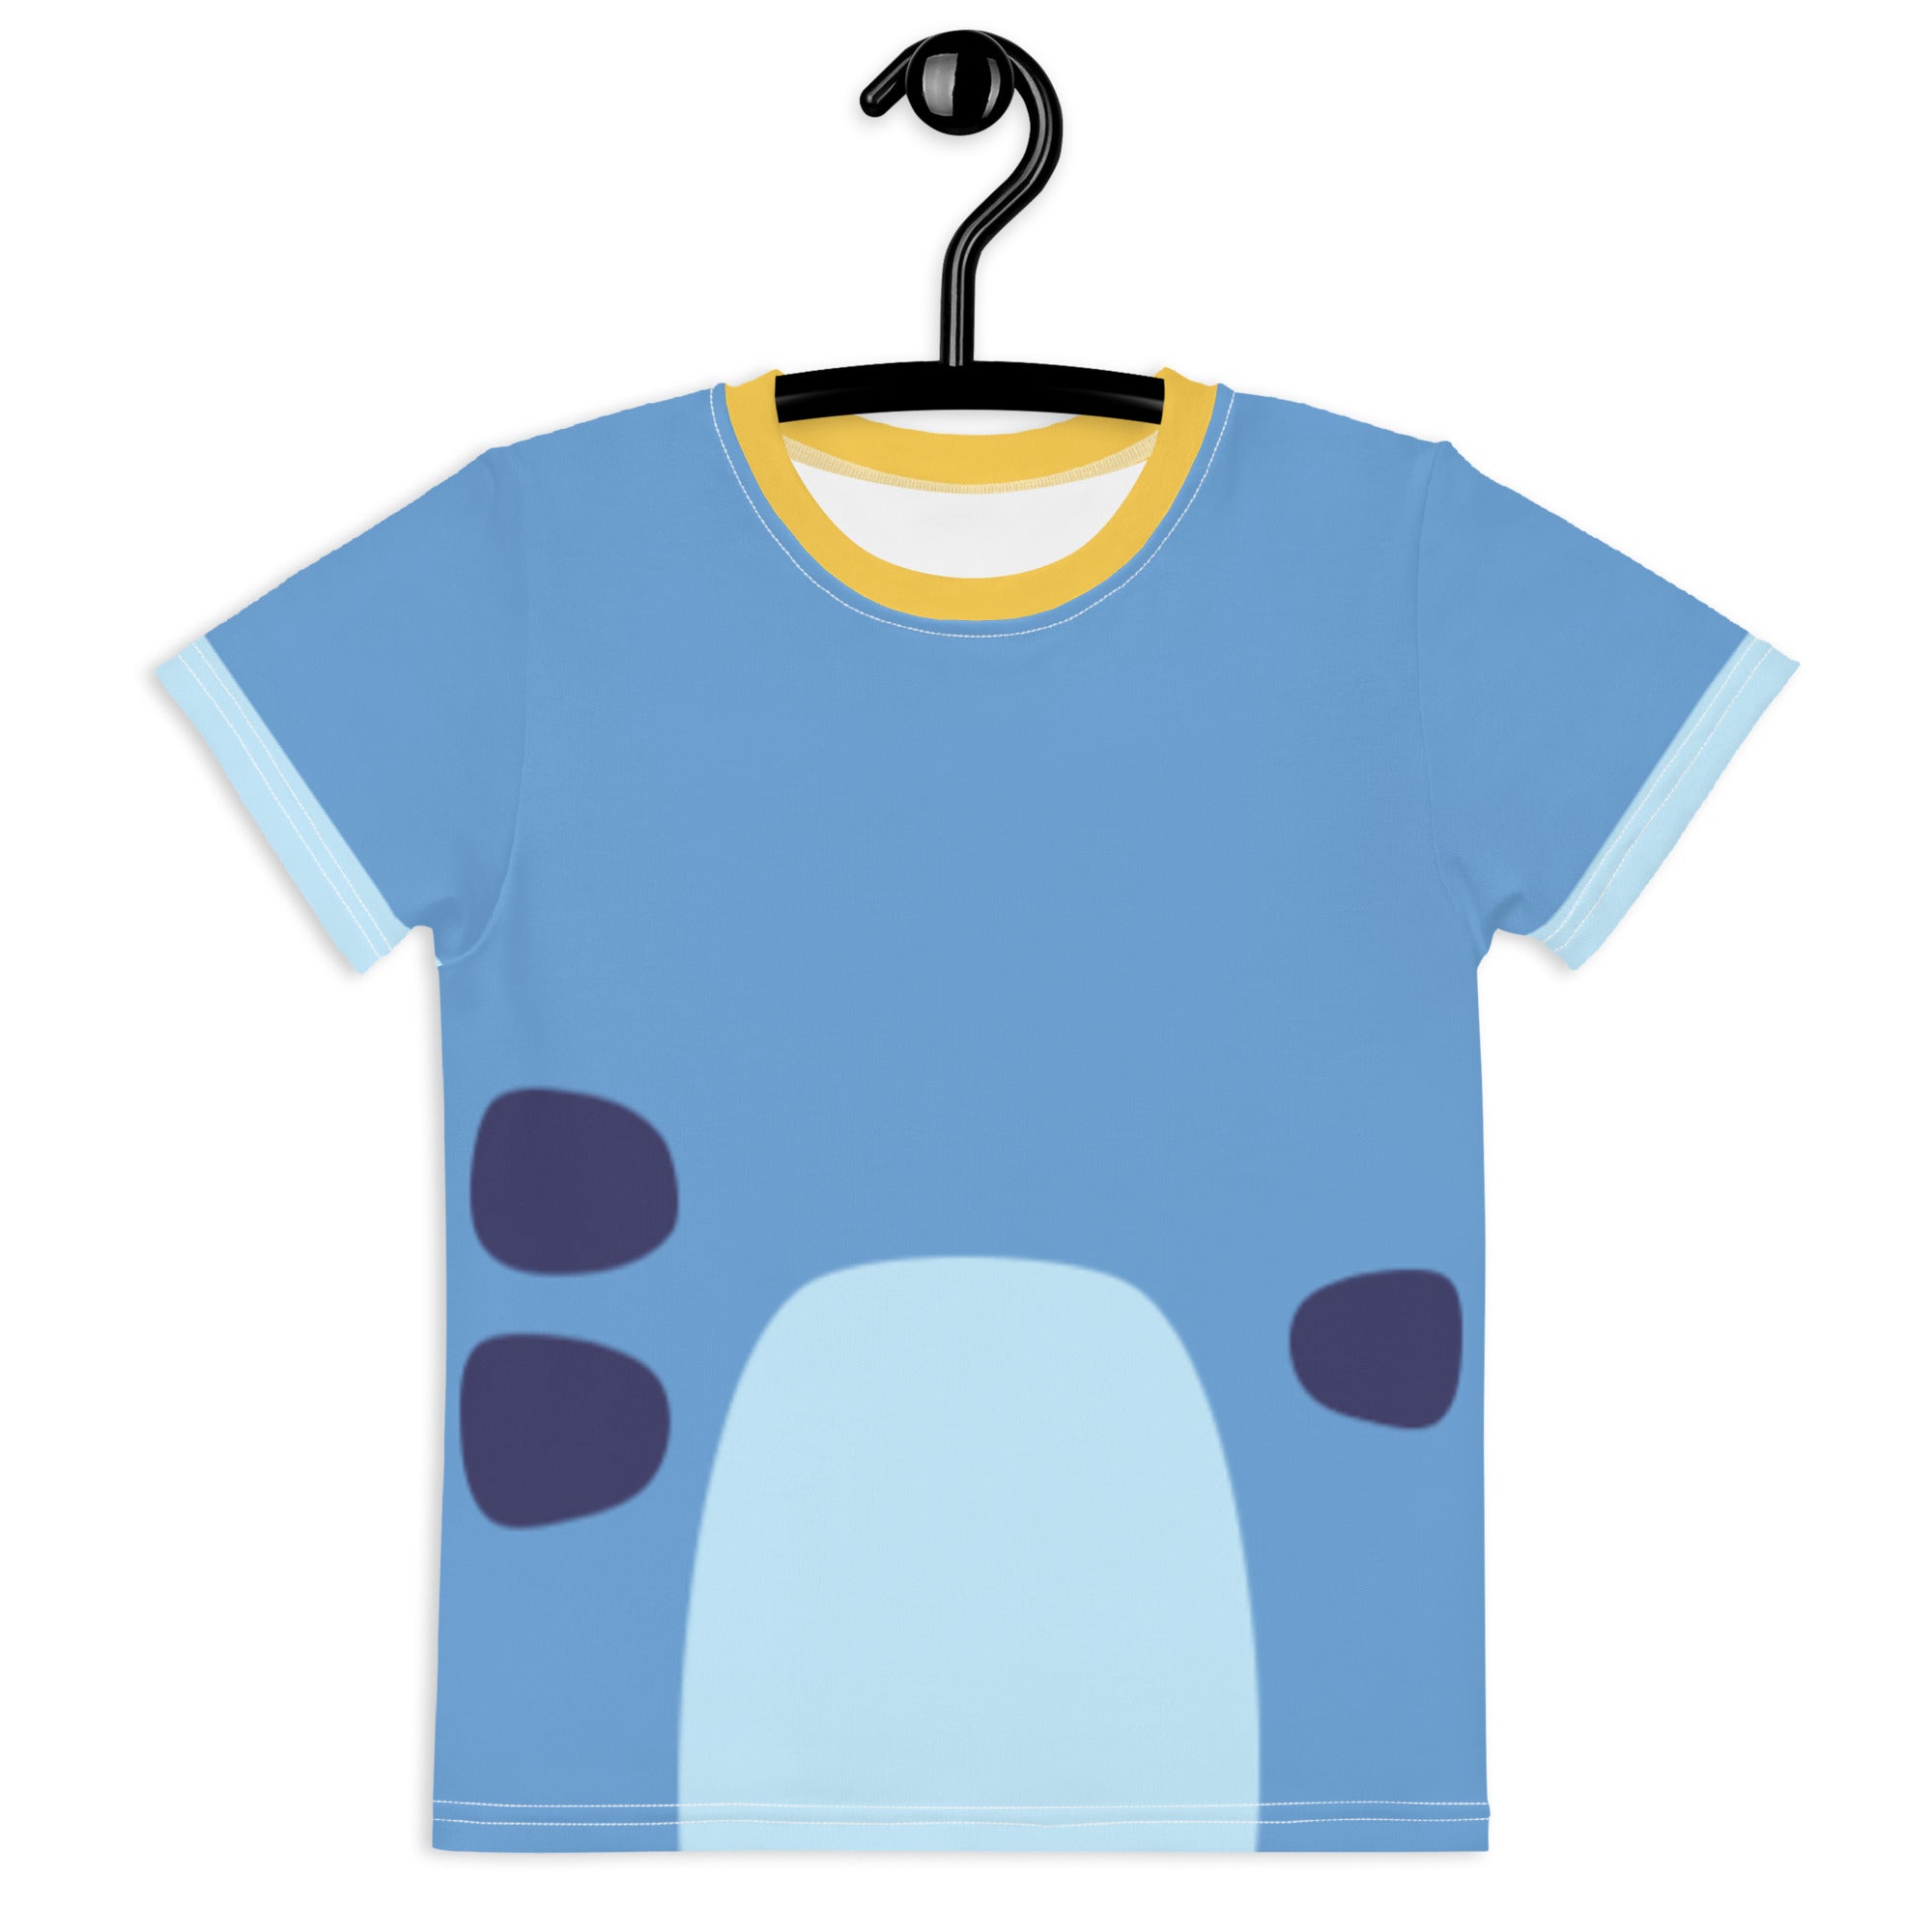 Bluey Shirt Adult -  Canada